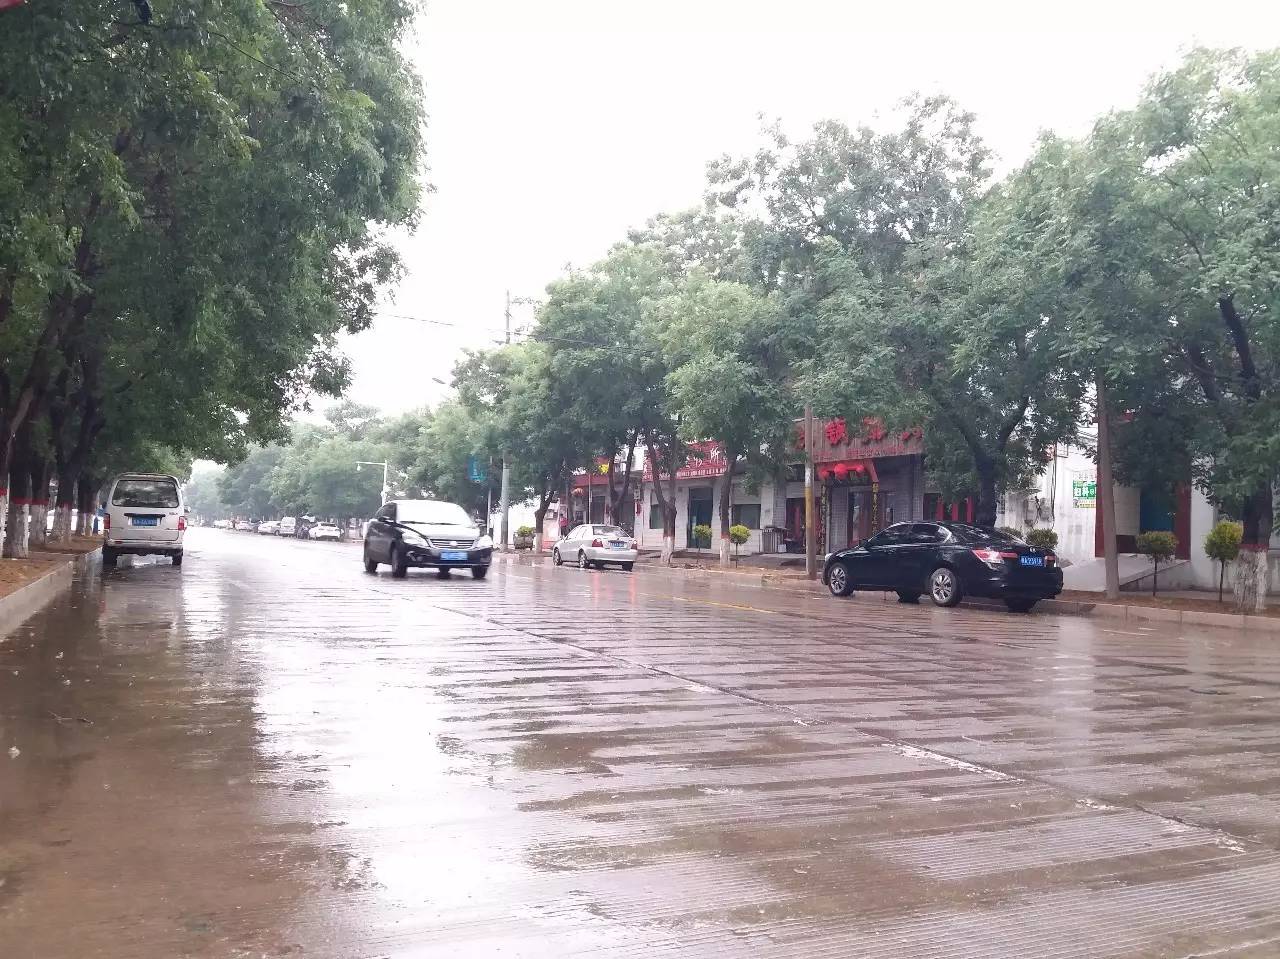 再看看雨天洗刷着我们赵县的街头!